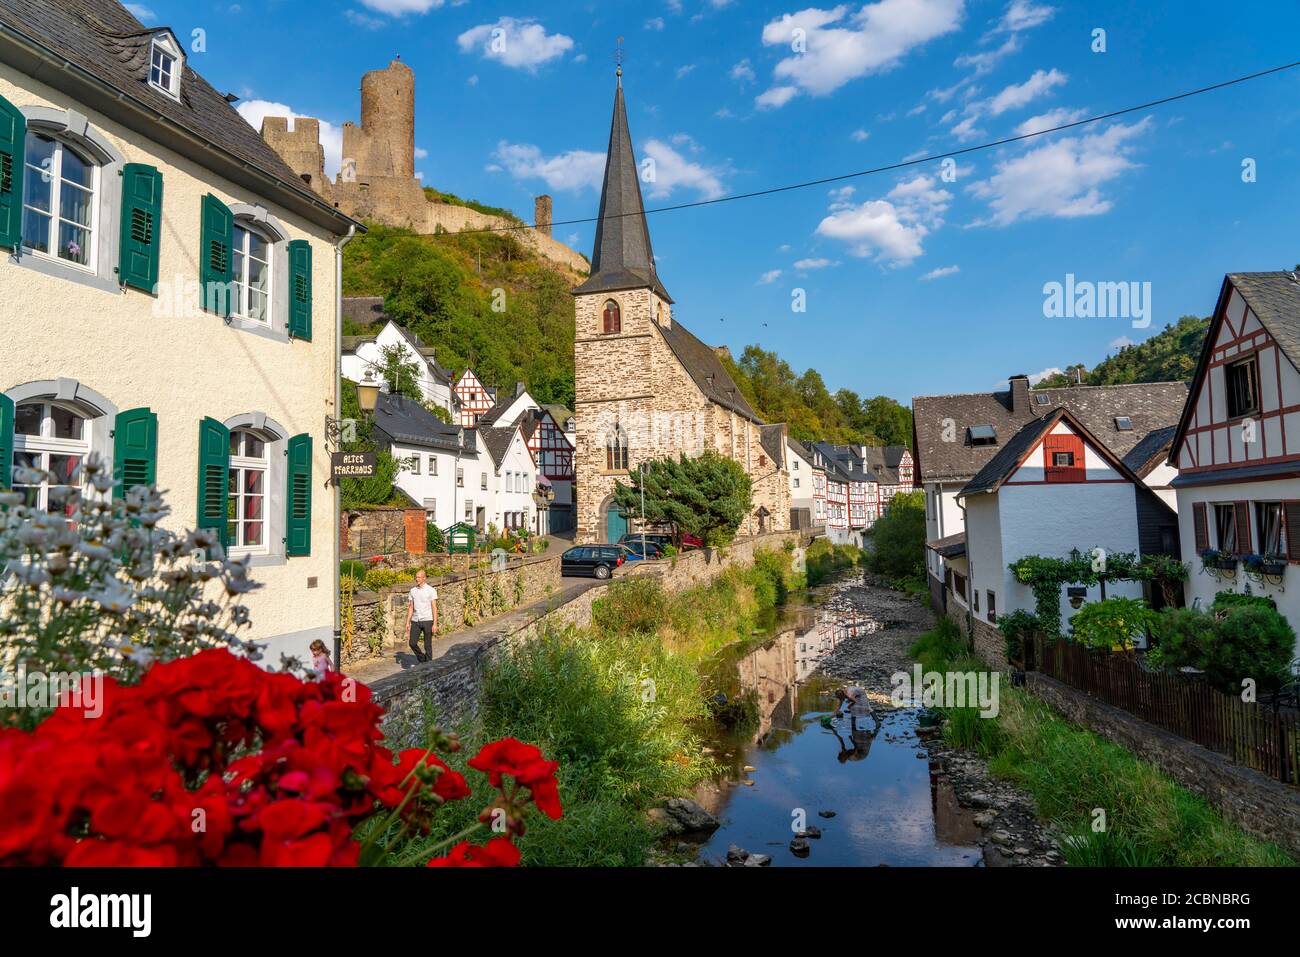 Monreal, village idyllique à colombages dans la vallée de l'Elz, ruines du Löwenburg, dans le district de Mayen-Coblence, en Rhénanie-Palatinat Banque D'Images